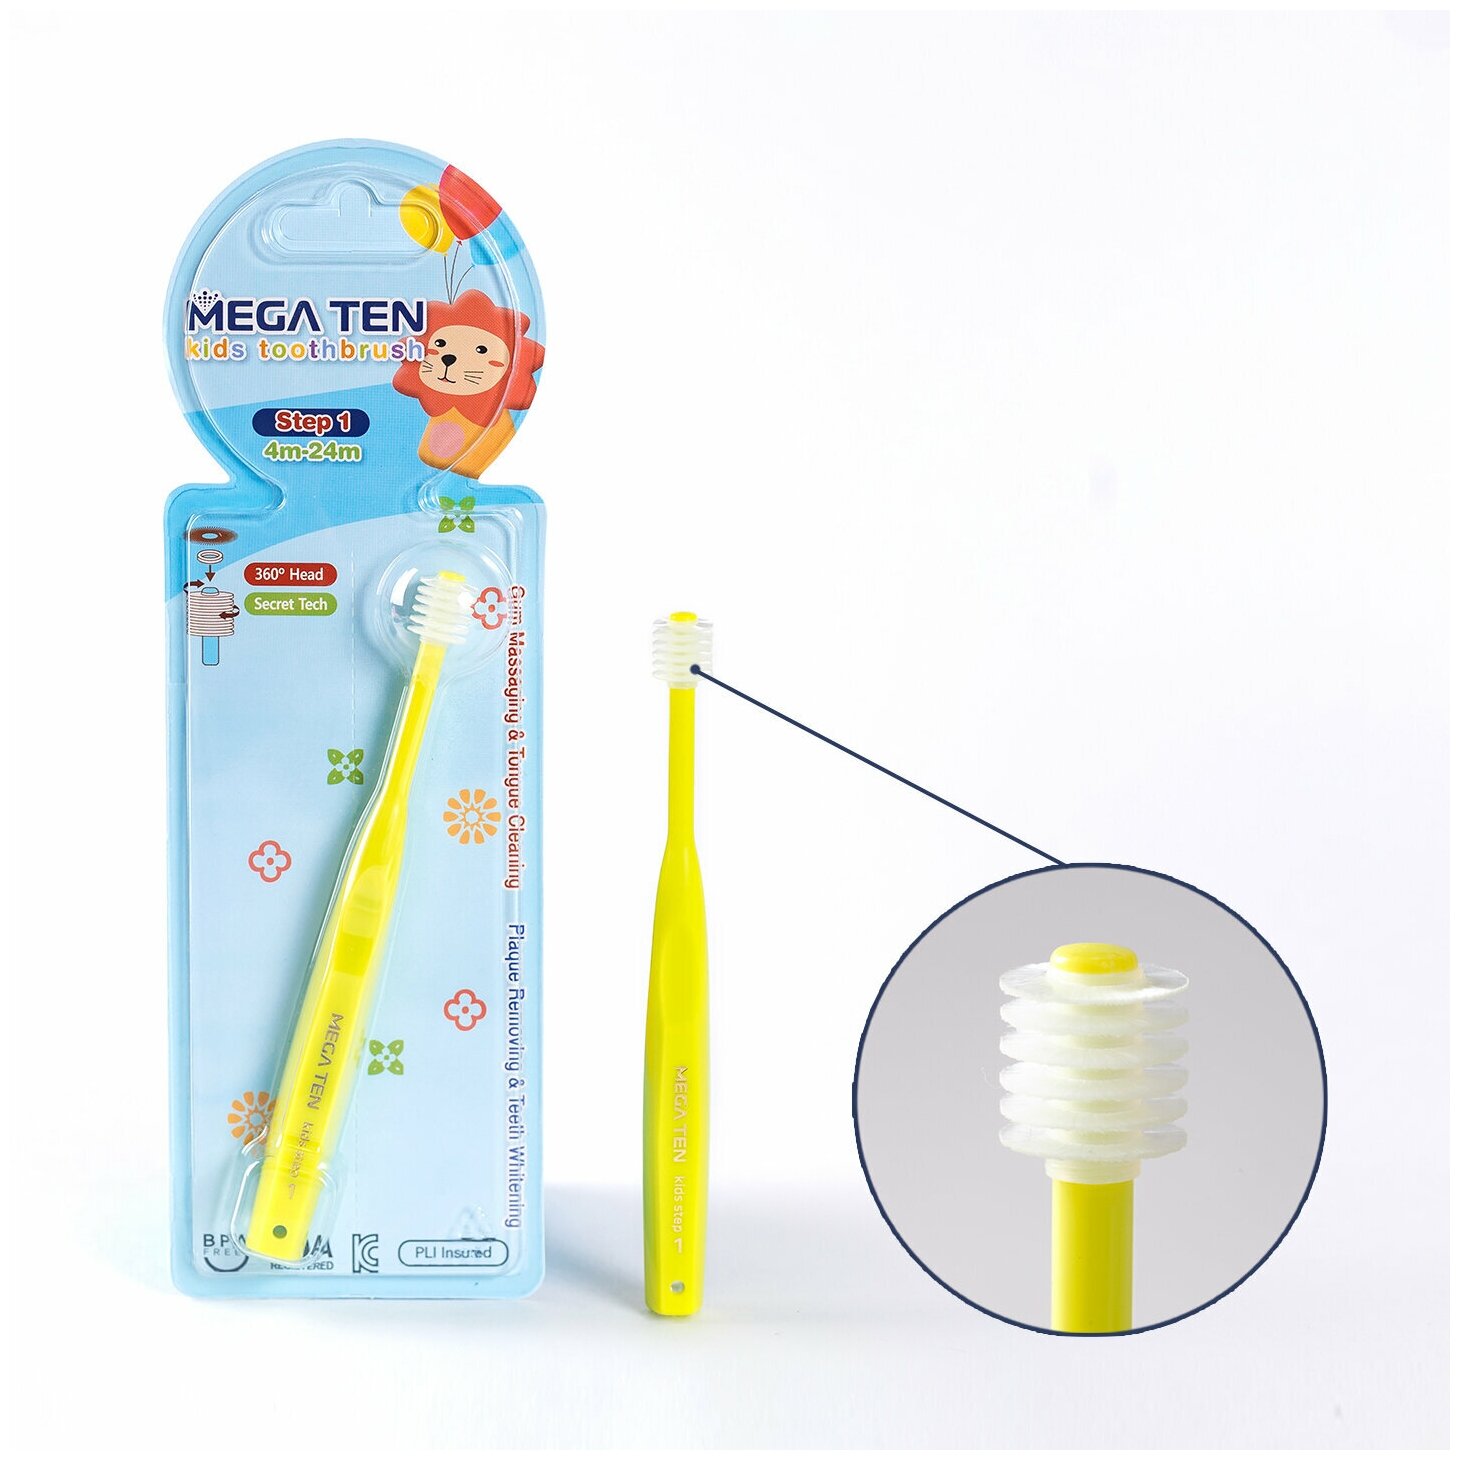 Детская зубная щетка MEGA TEN Step 1 ( 0-2г. )